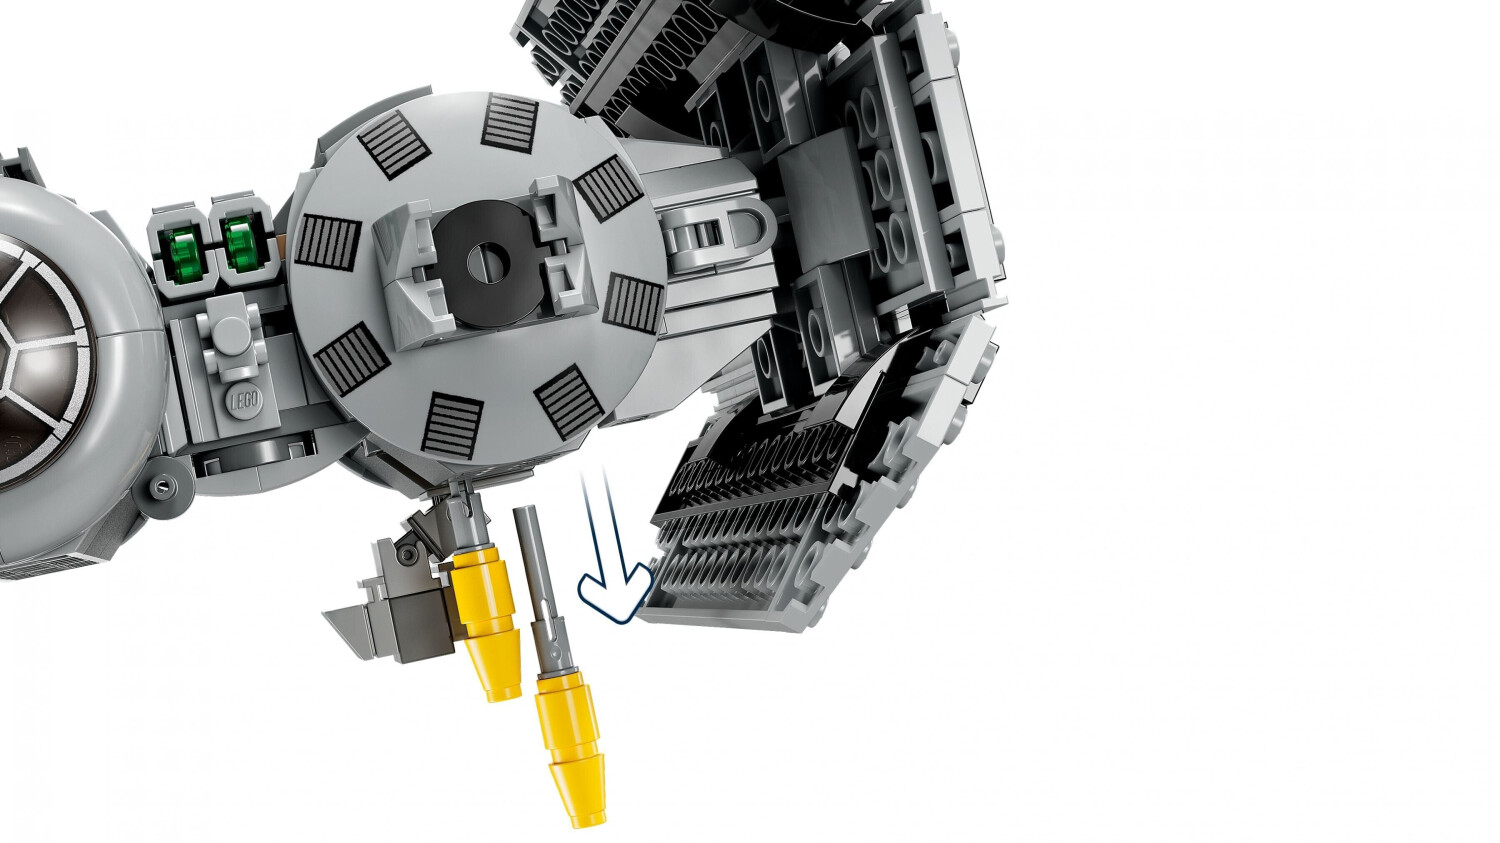 LEGO Star Wars 75347 Le Bombardier TIE, Kit de Maquette à